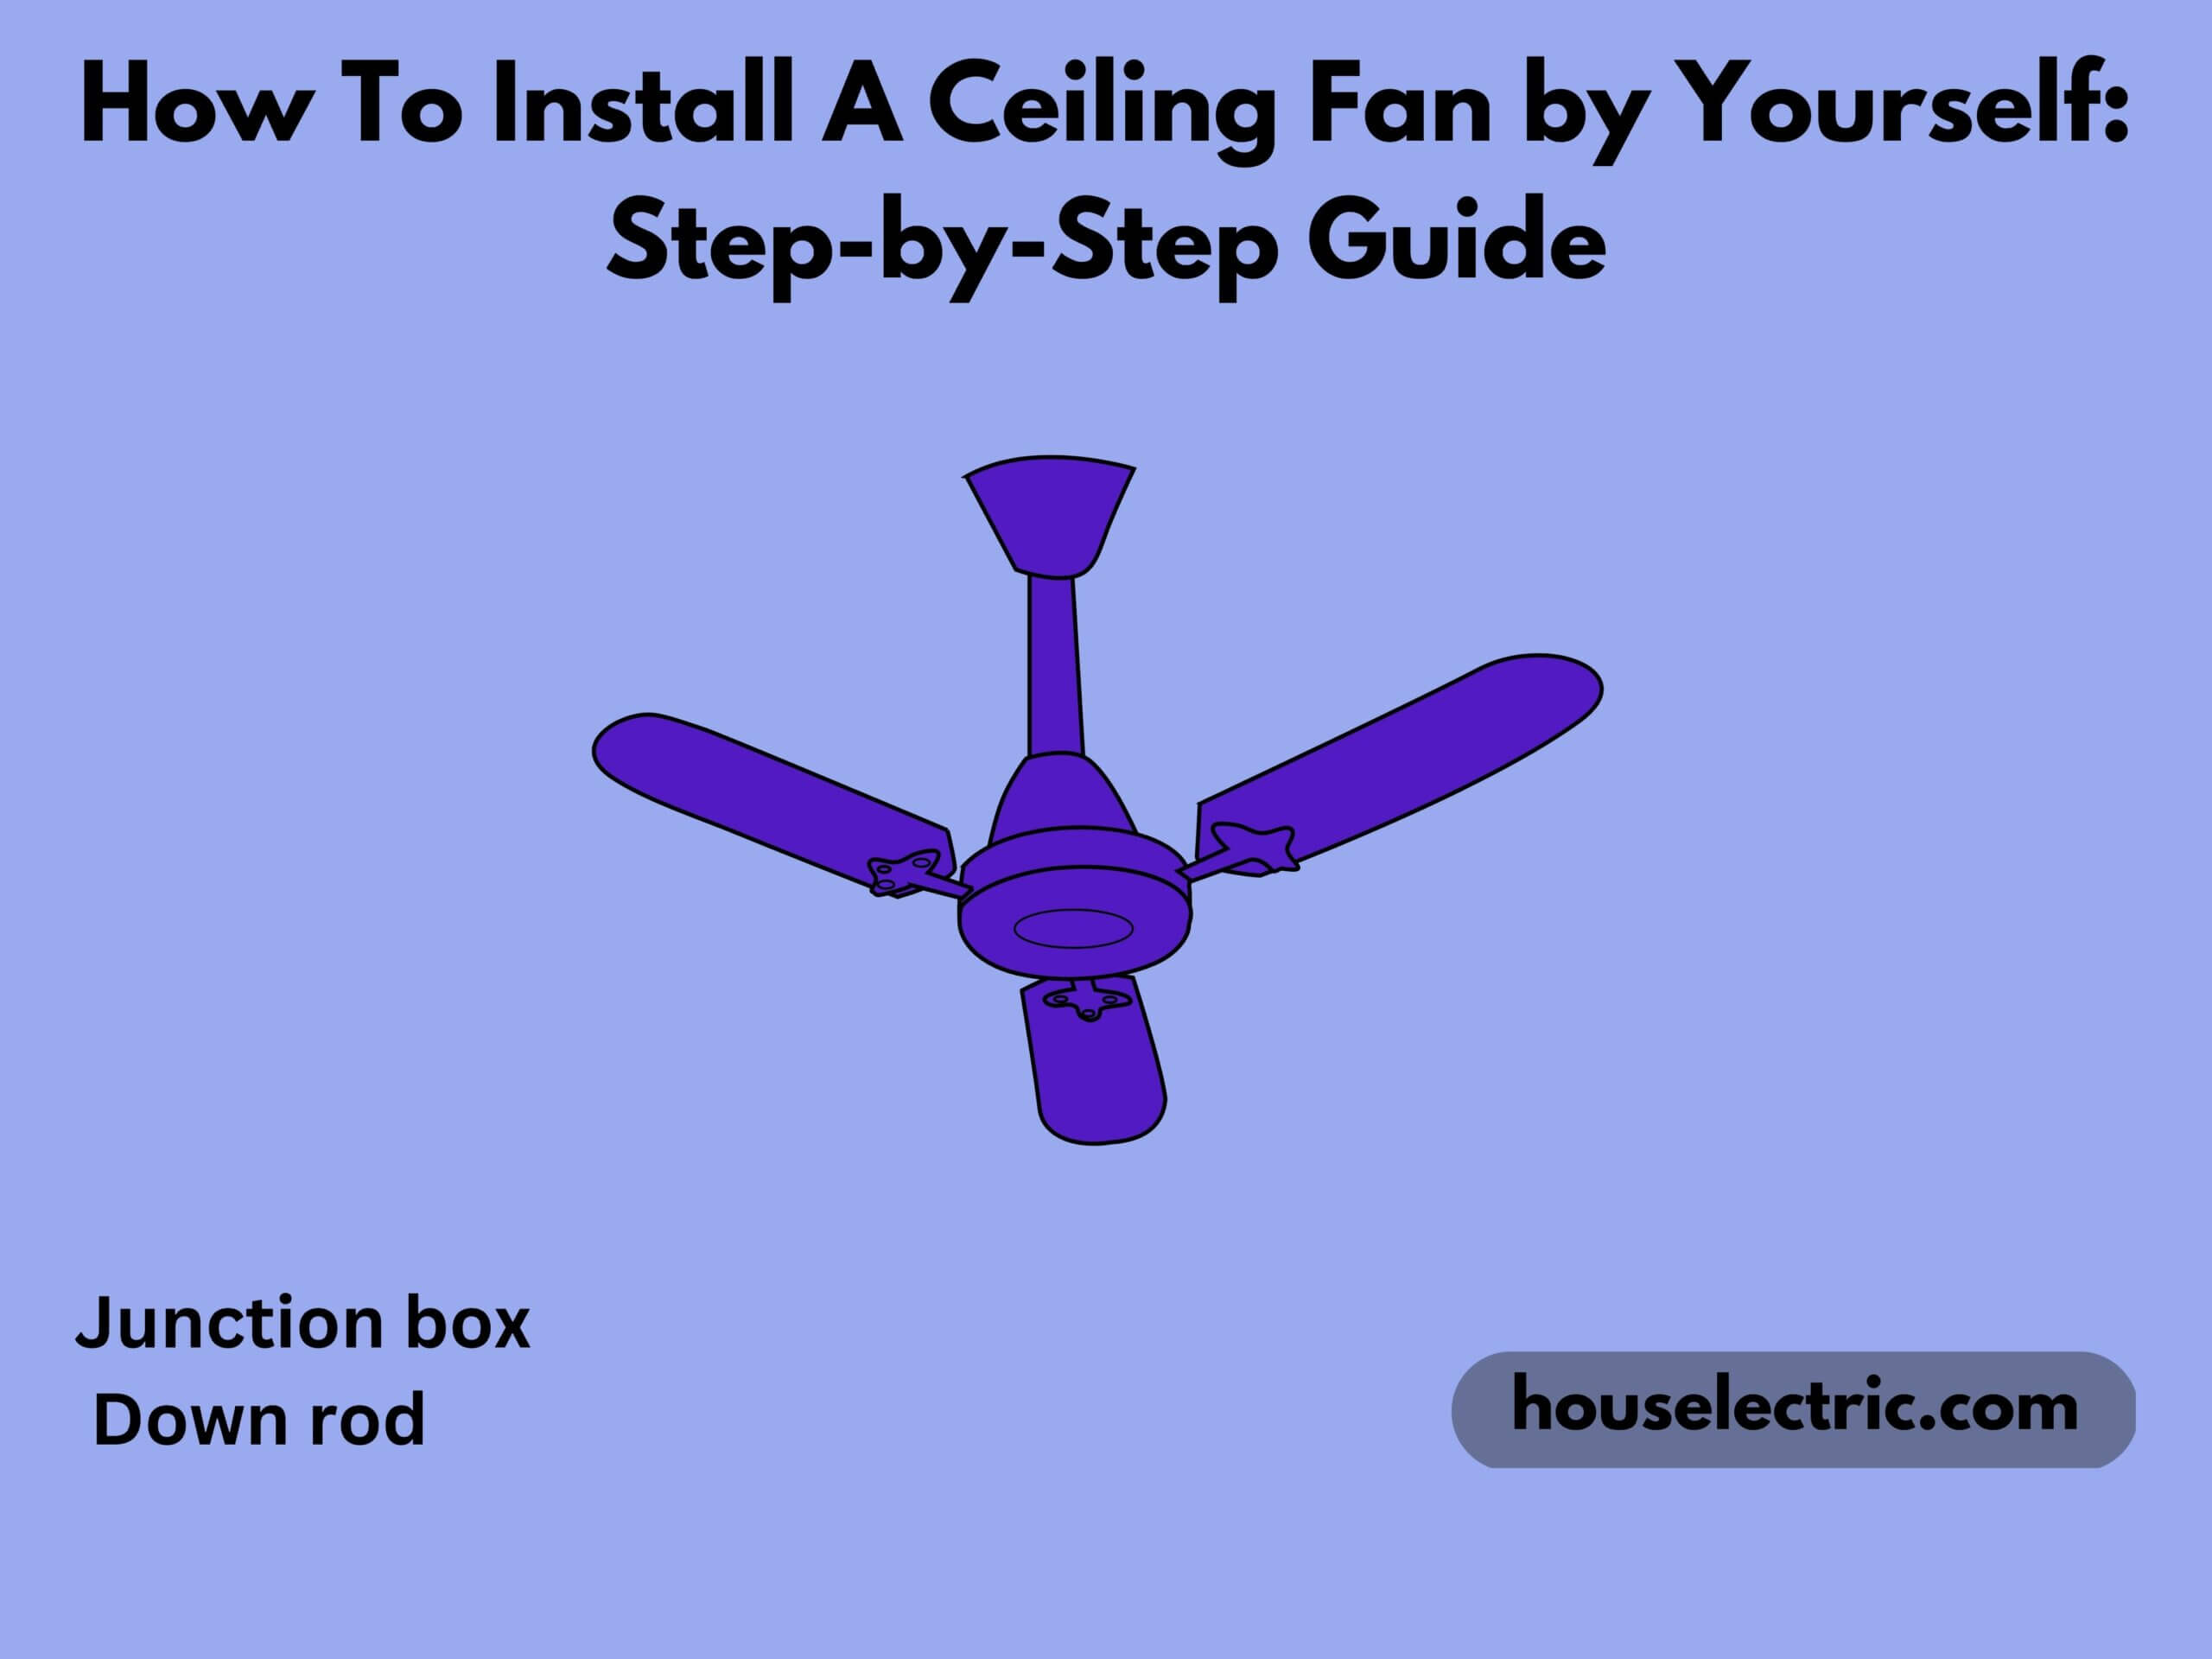 A Ceiling Fan